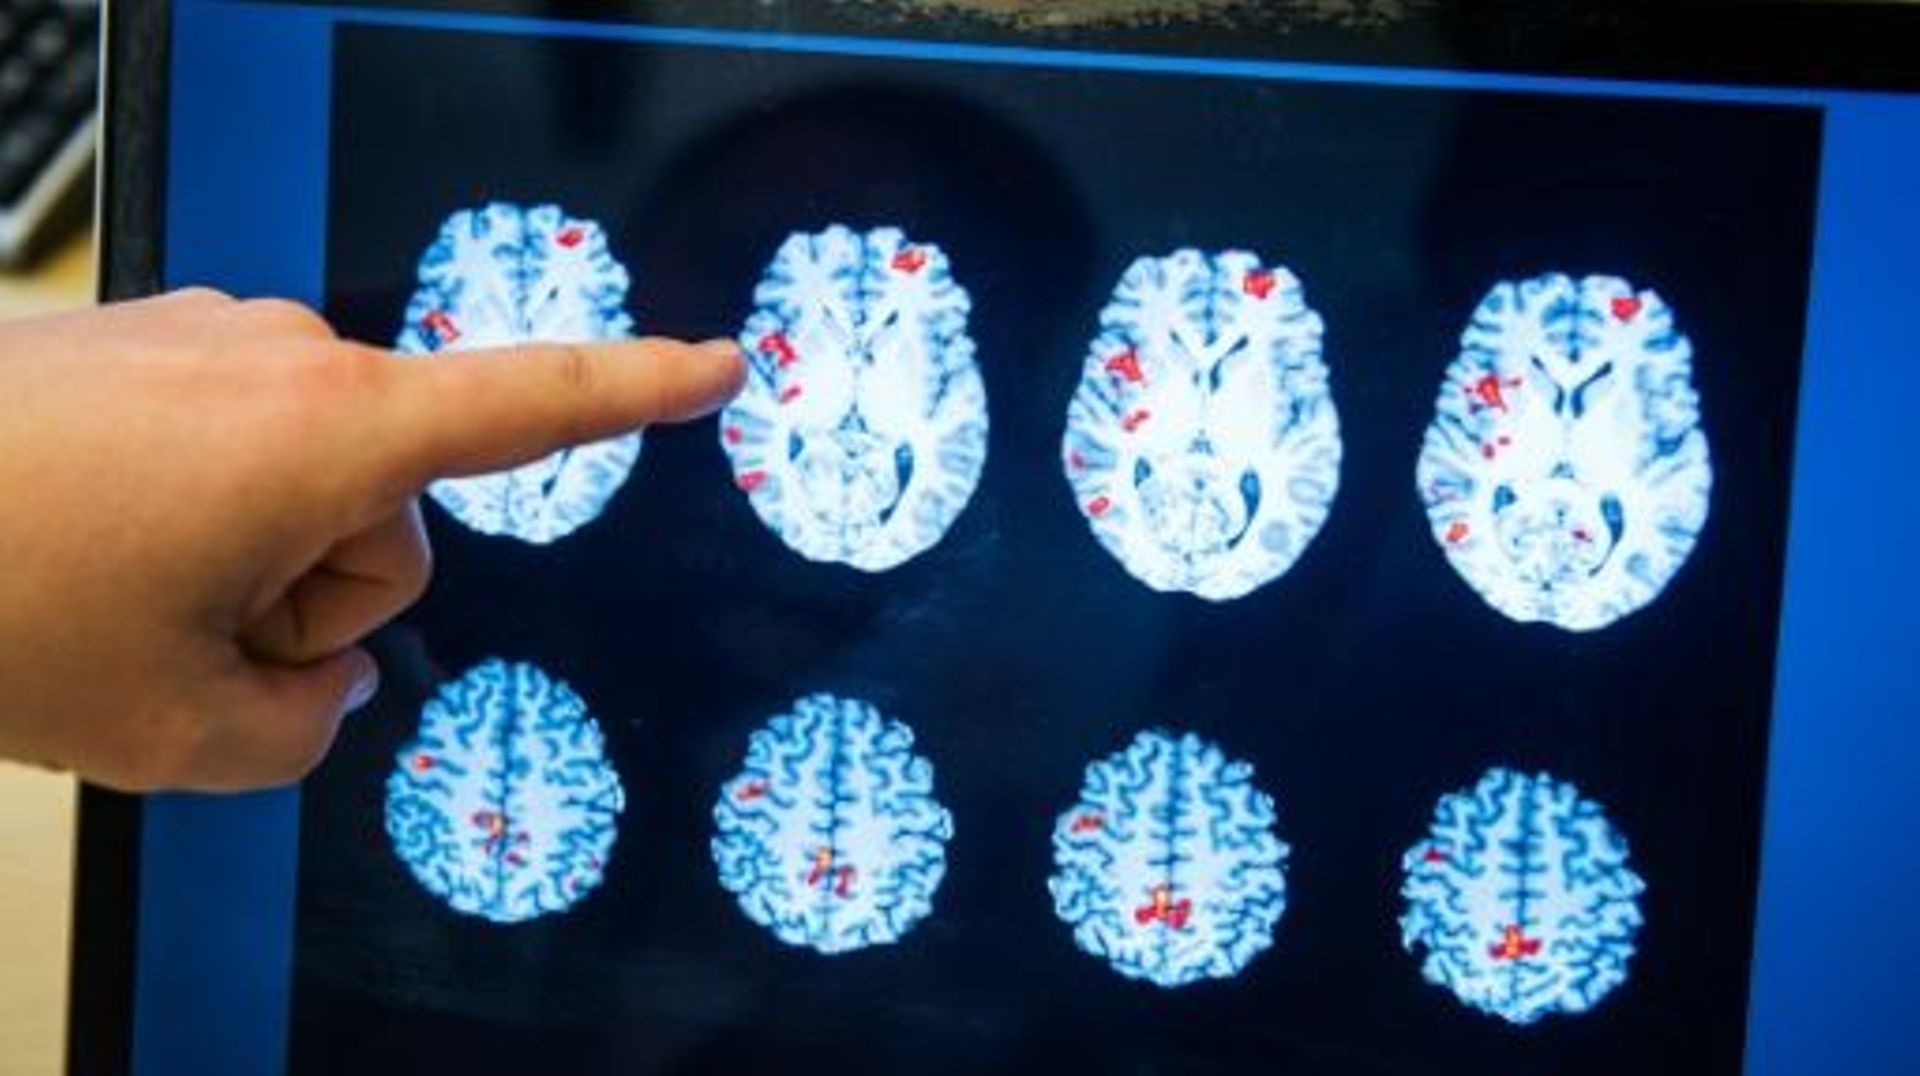 Un médecin montre les zones d'activité du cerveau d'un homme sujet à des phantasmes pédophiles, à l'hôpital Huddinge à Stockholme, le 15 avril 2016 